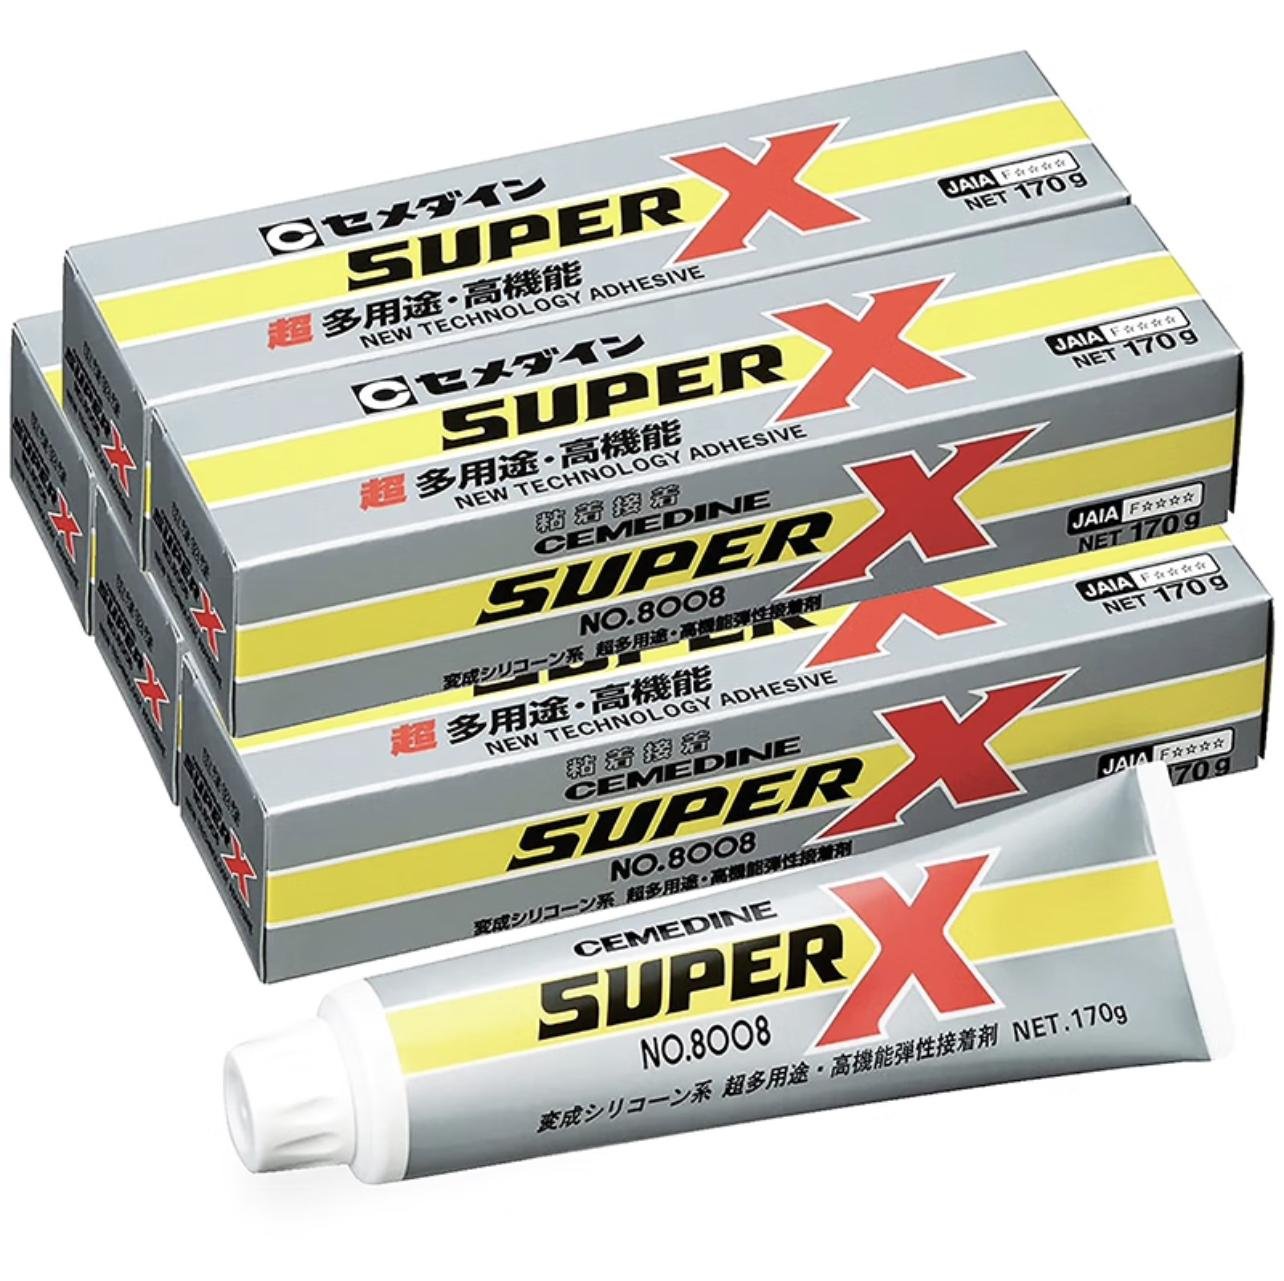 Super x no.8008L 170克 5